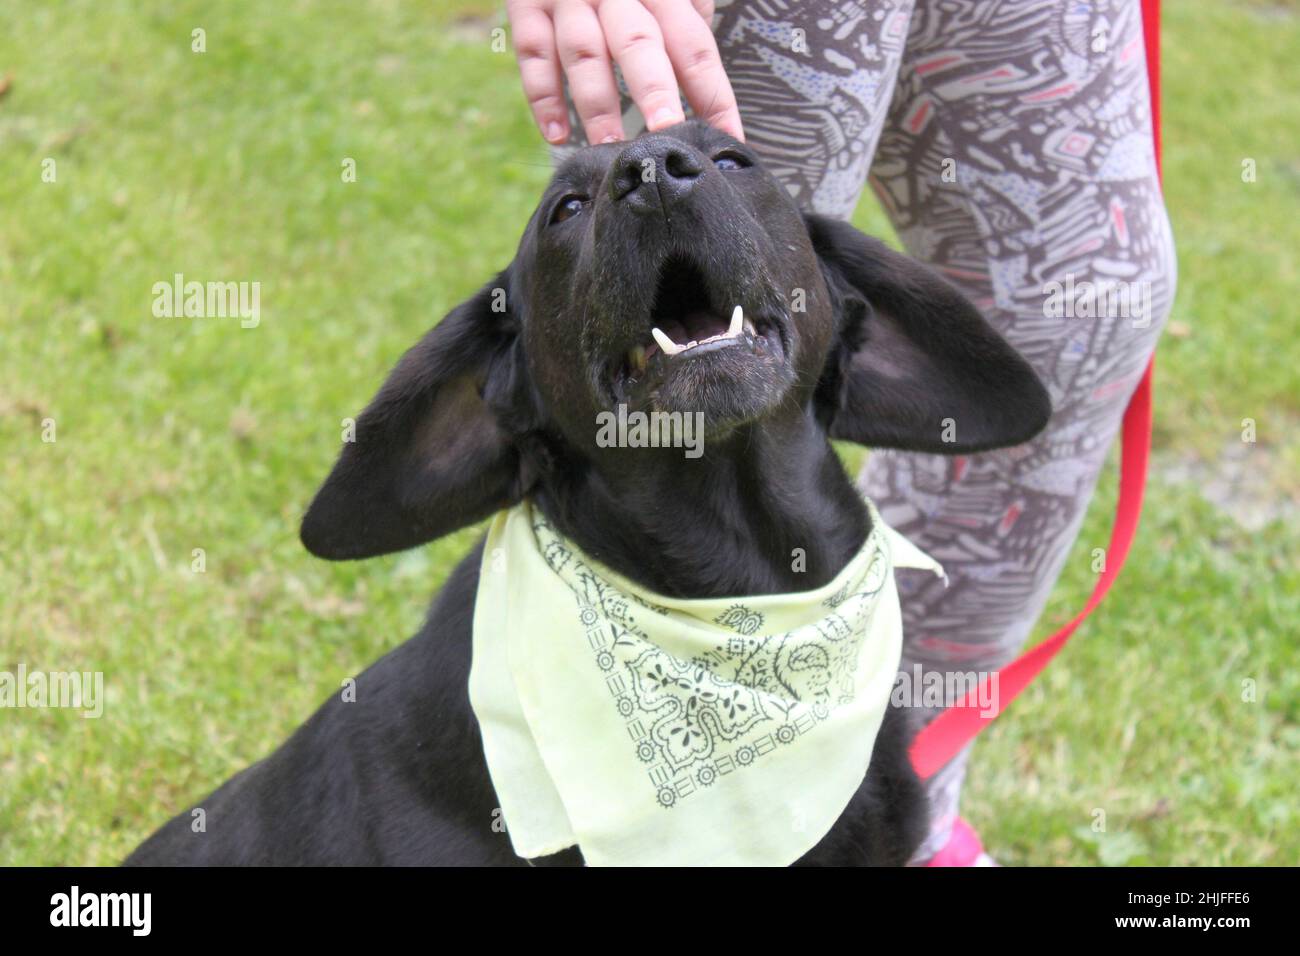 Un cane con grandi orecchie divertenti accanto ad un essere umano. Il cane da caccia nero chiede attenzione e stroking alzando la testa, e le sue lunghe orecchie sembrano divertenti. Foto Stock